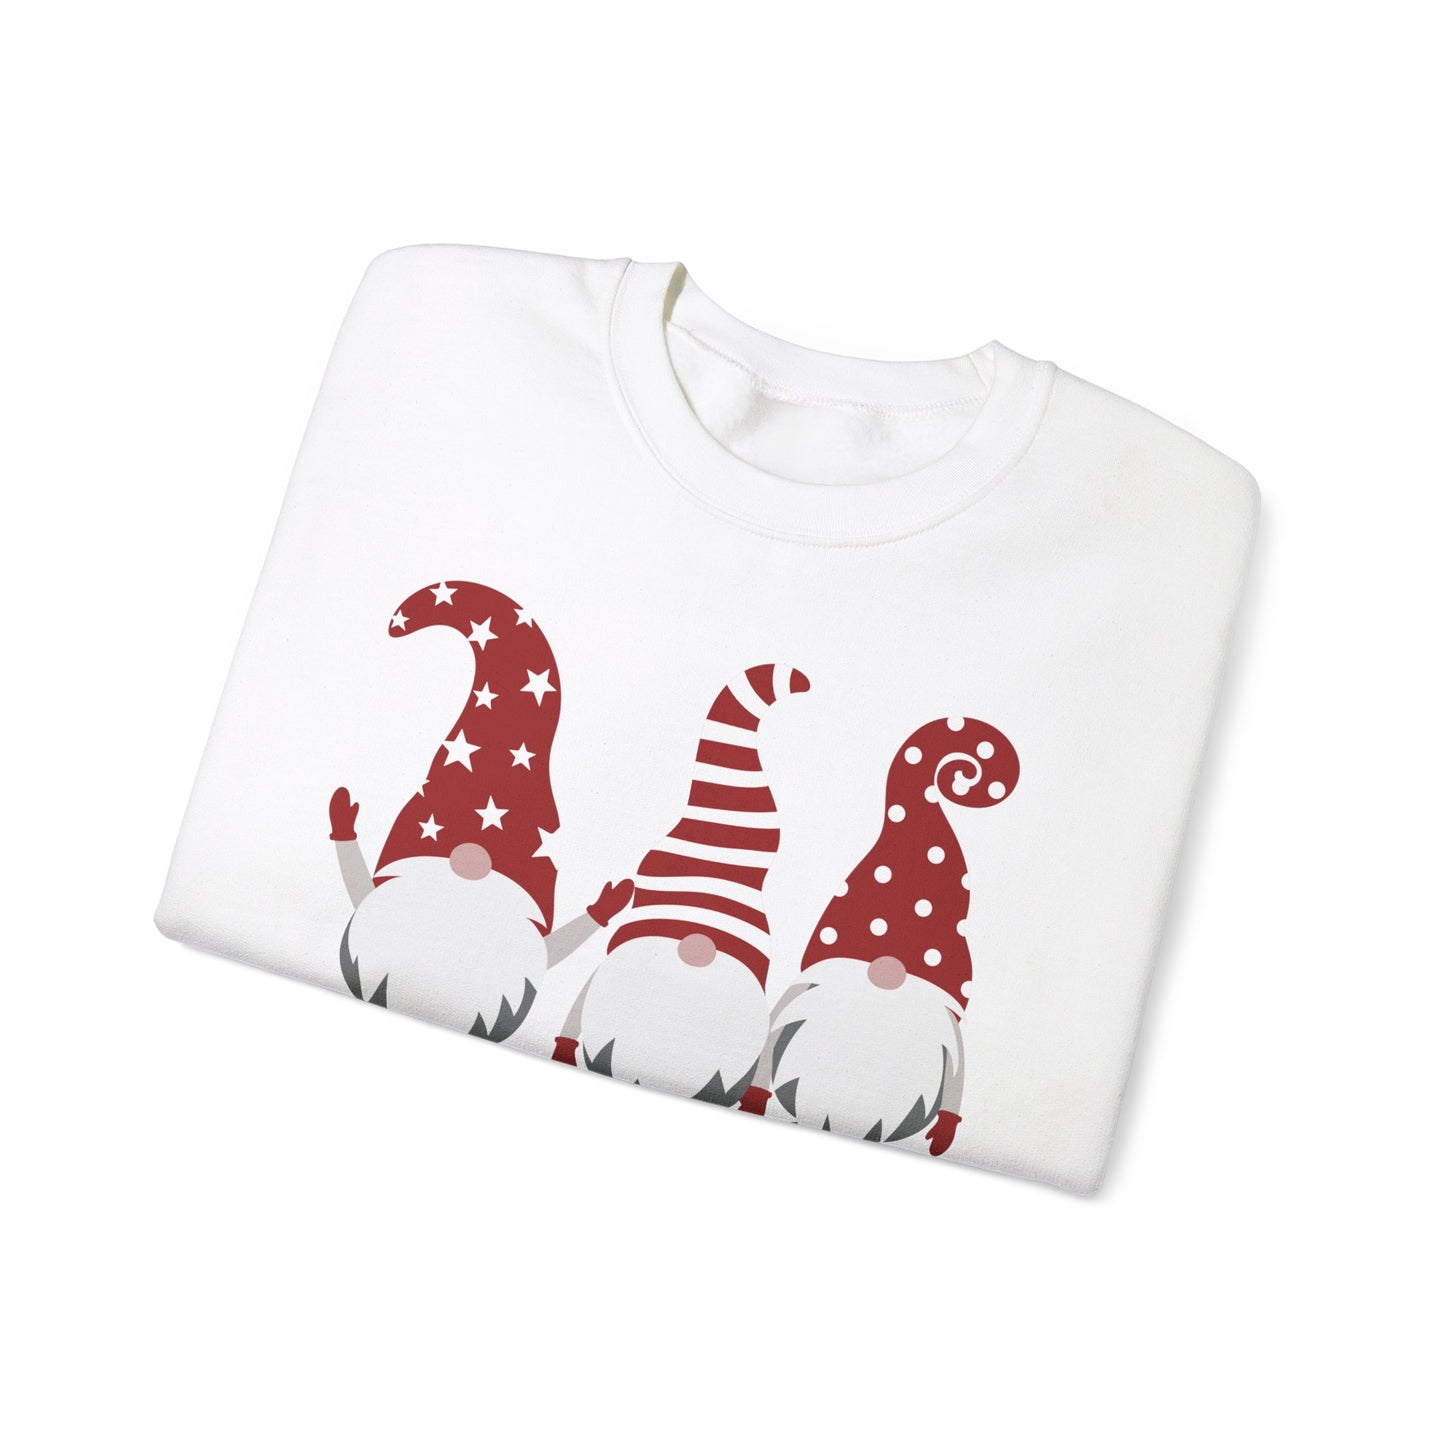 Falalalala Red and White Gnome Christmas Unisex Heavy Blend™ Crewneck Sweatshirt